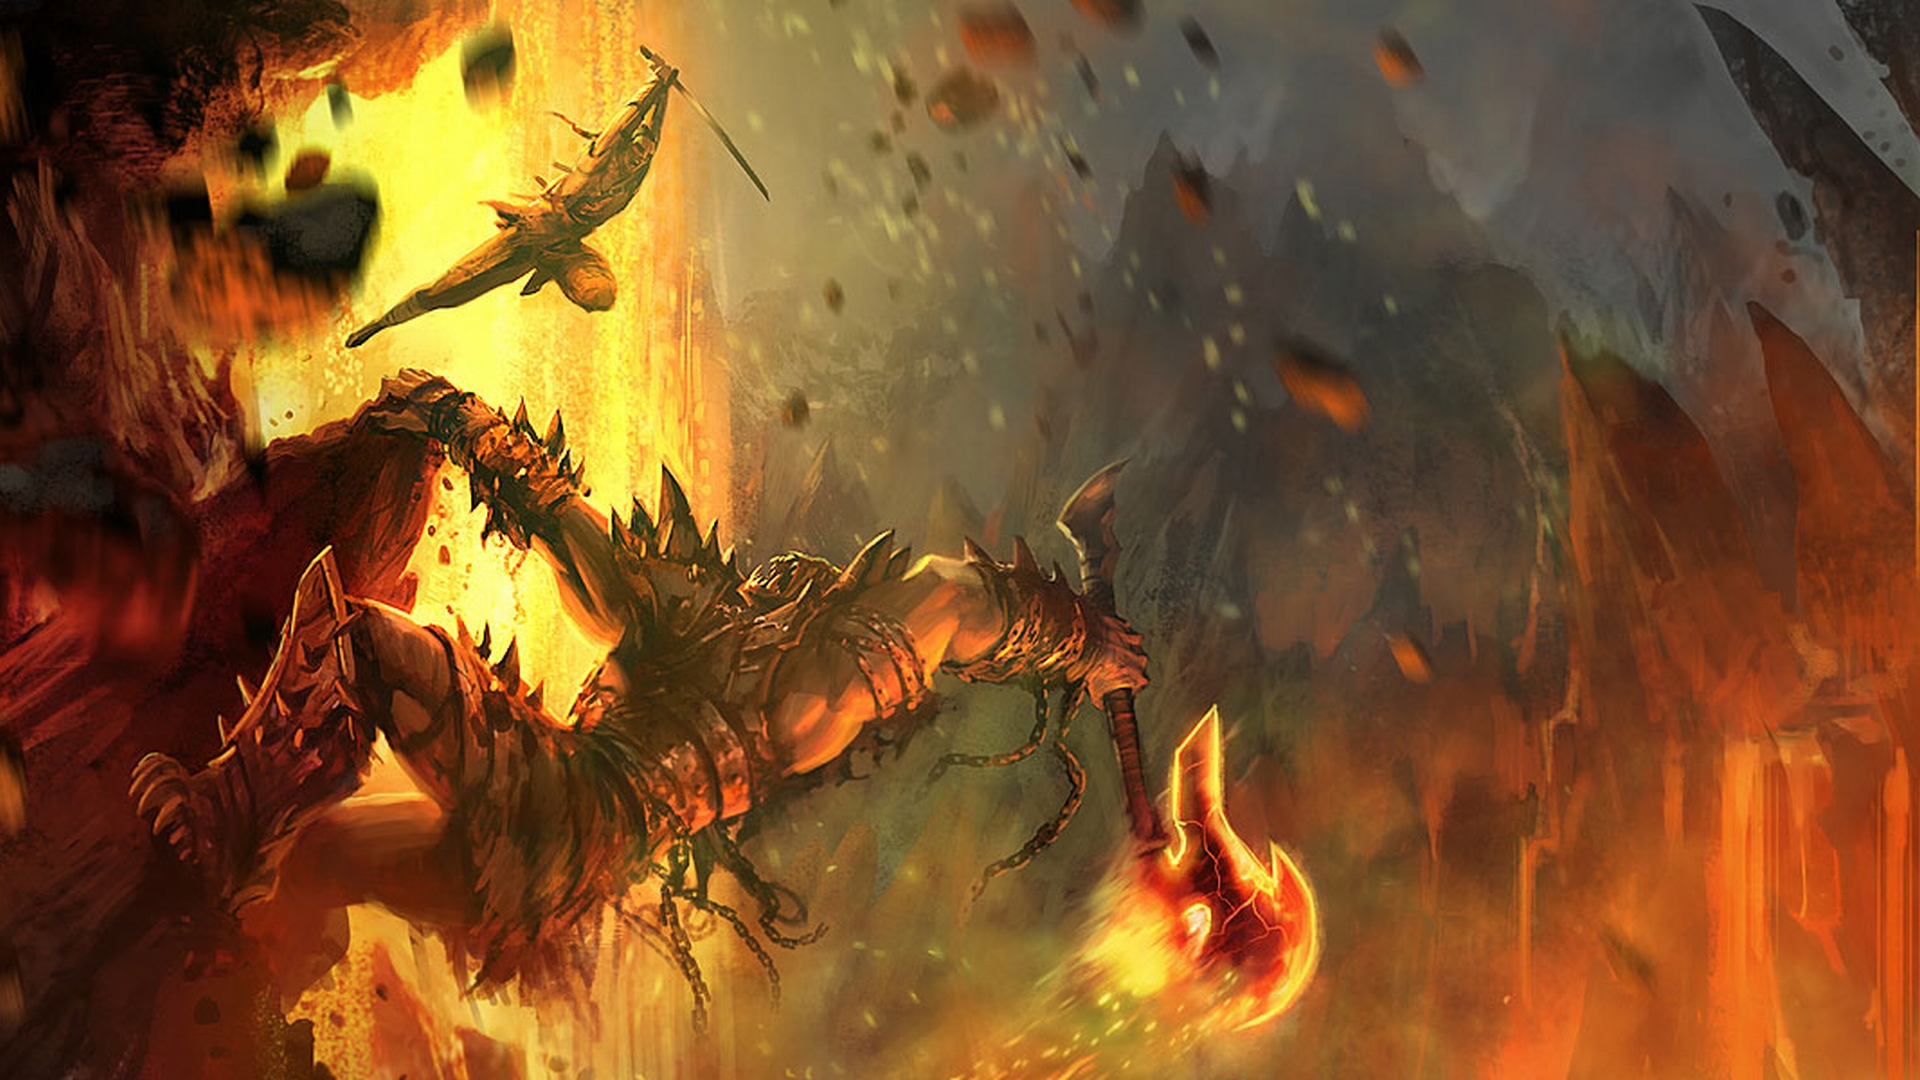 Fantasy battle scene on a vibrant desktop wallpaper.